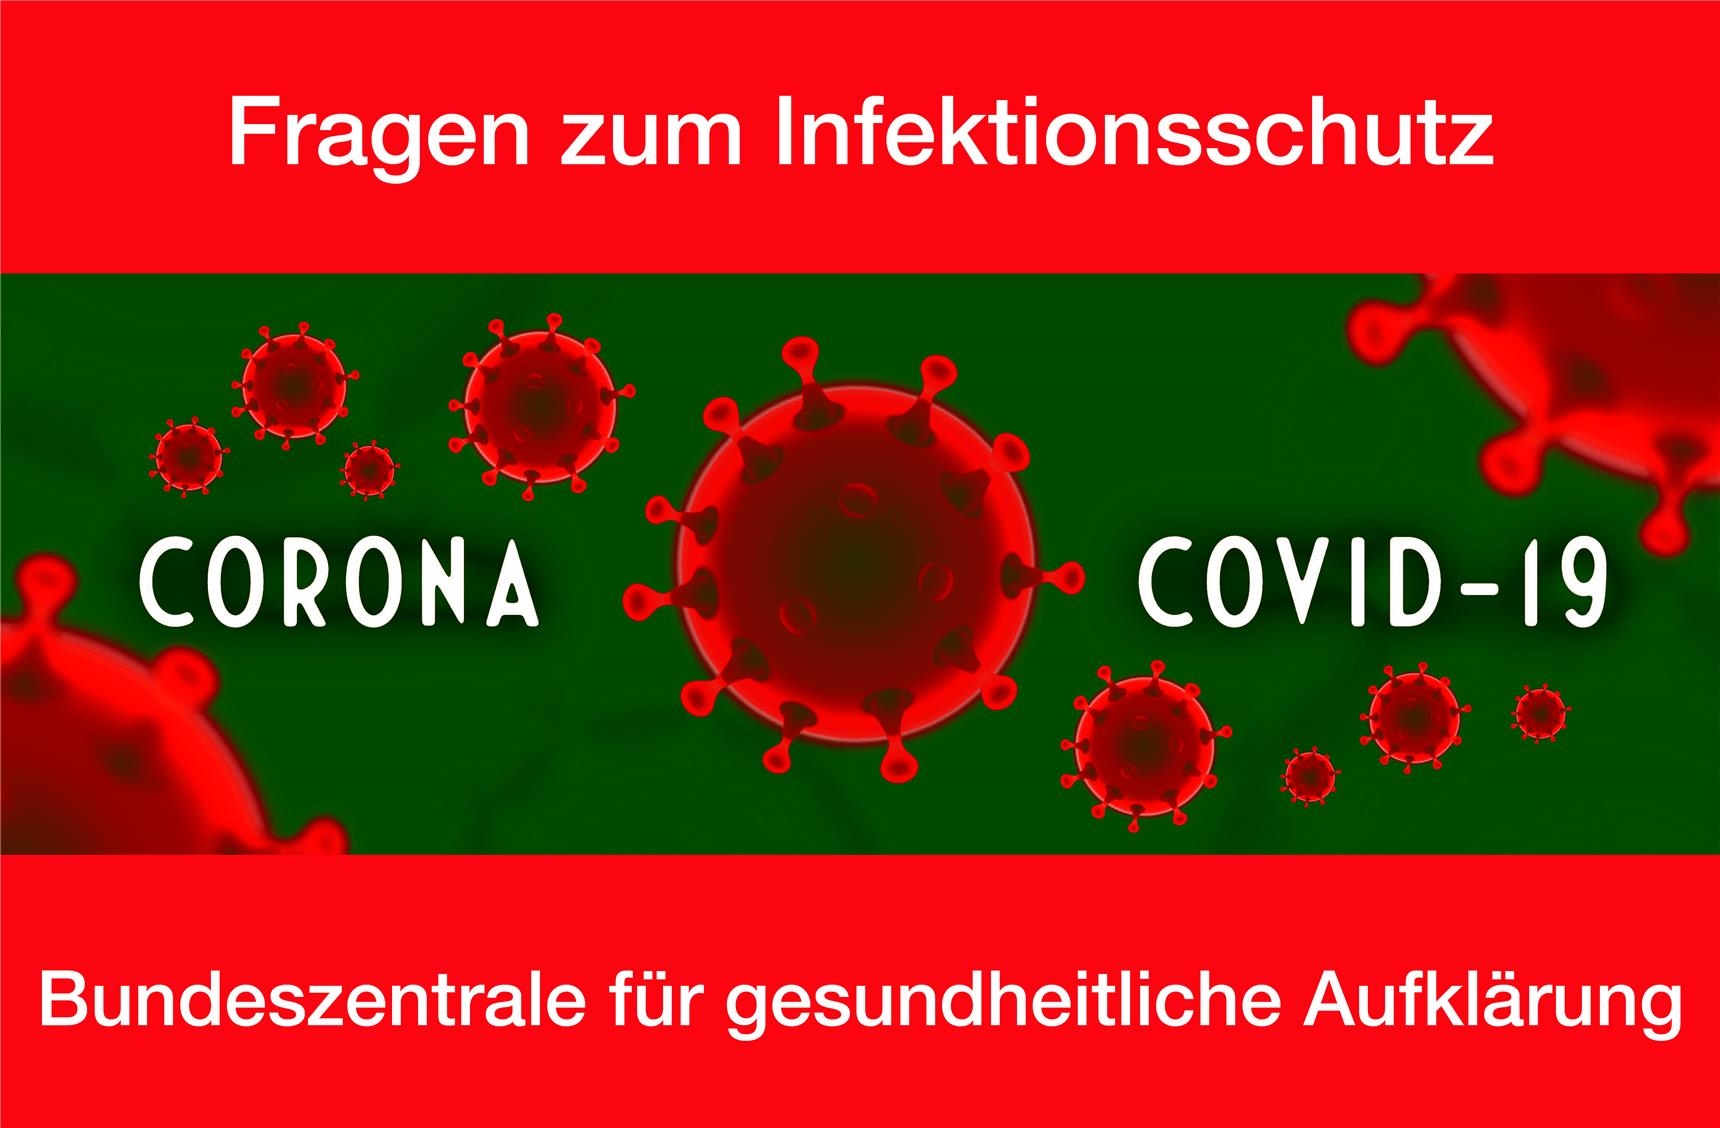 Coronavirus und Infektionsschutz